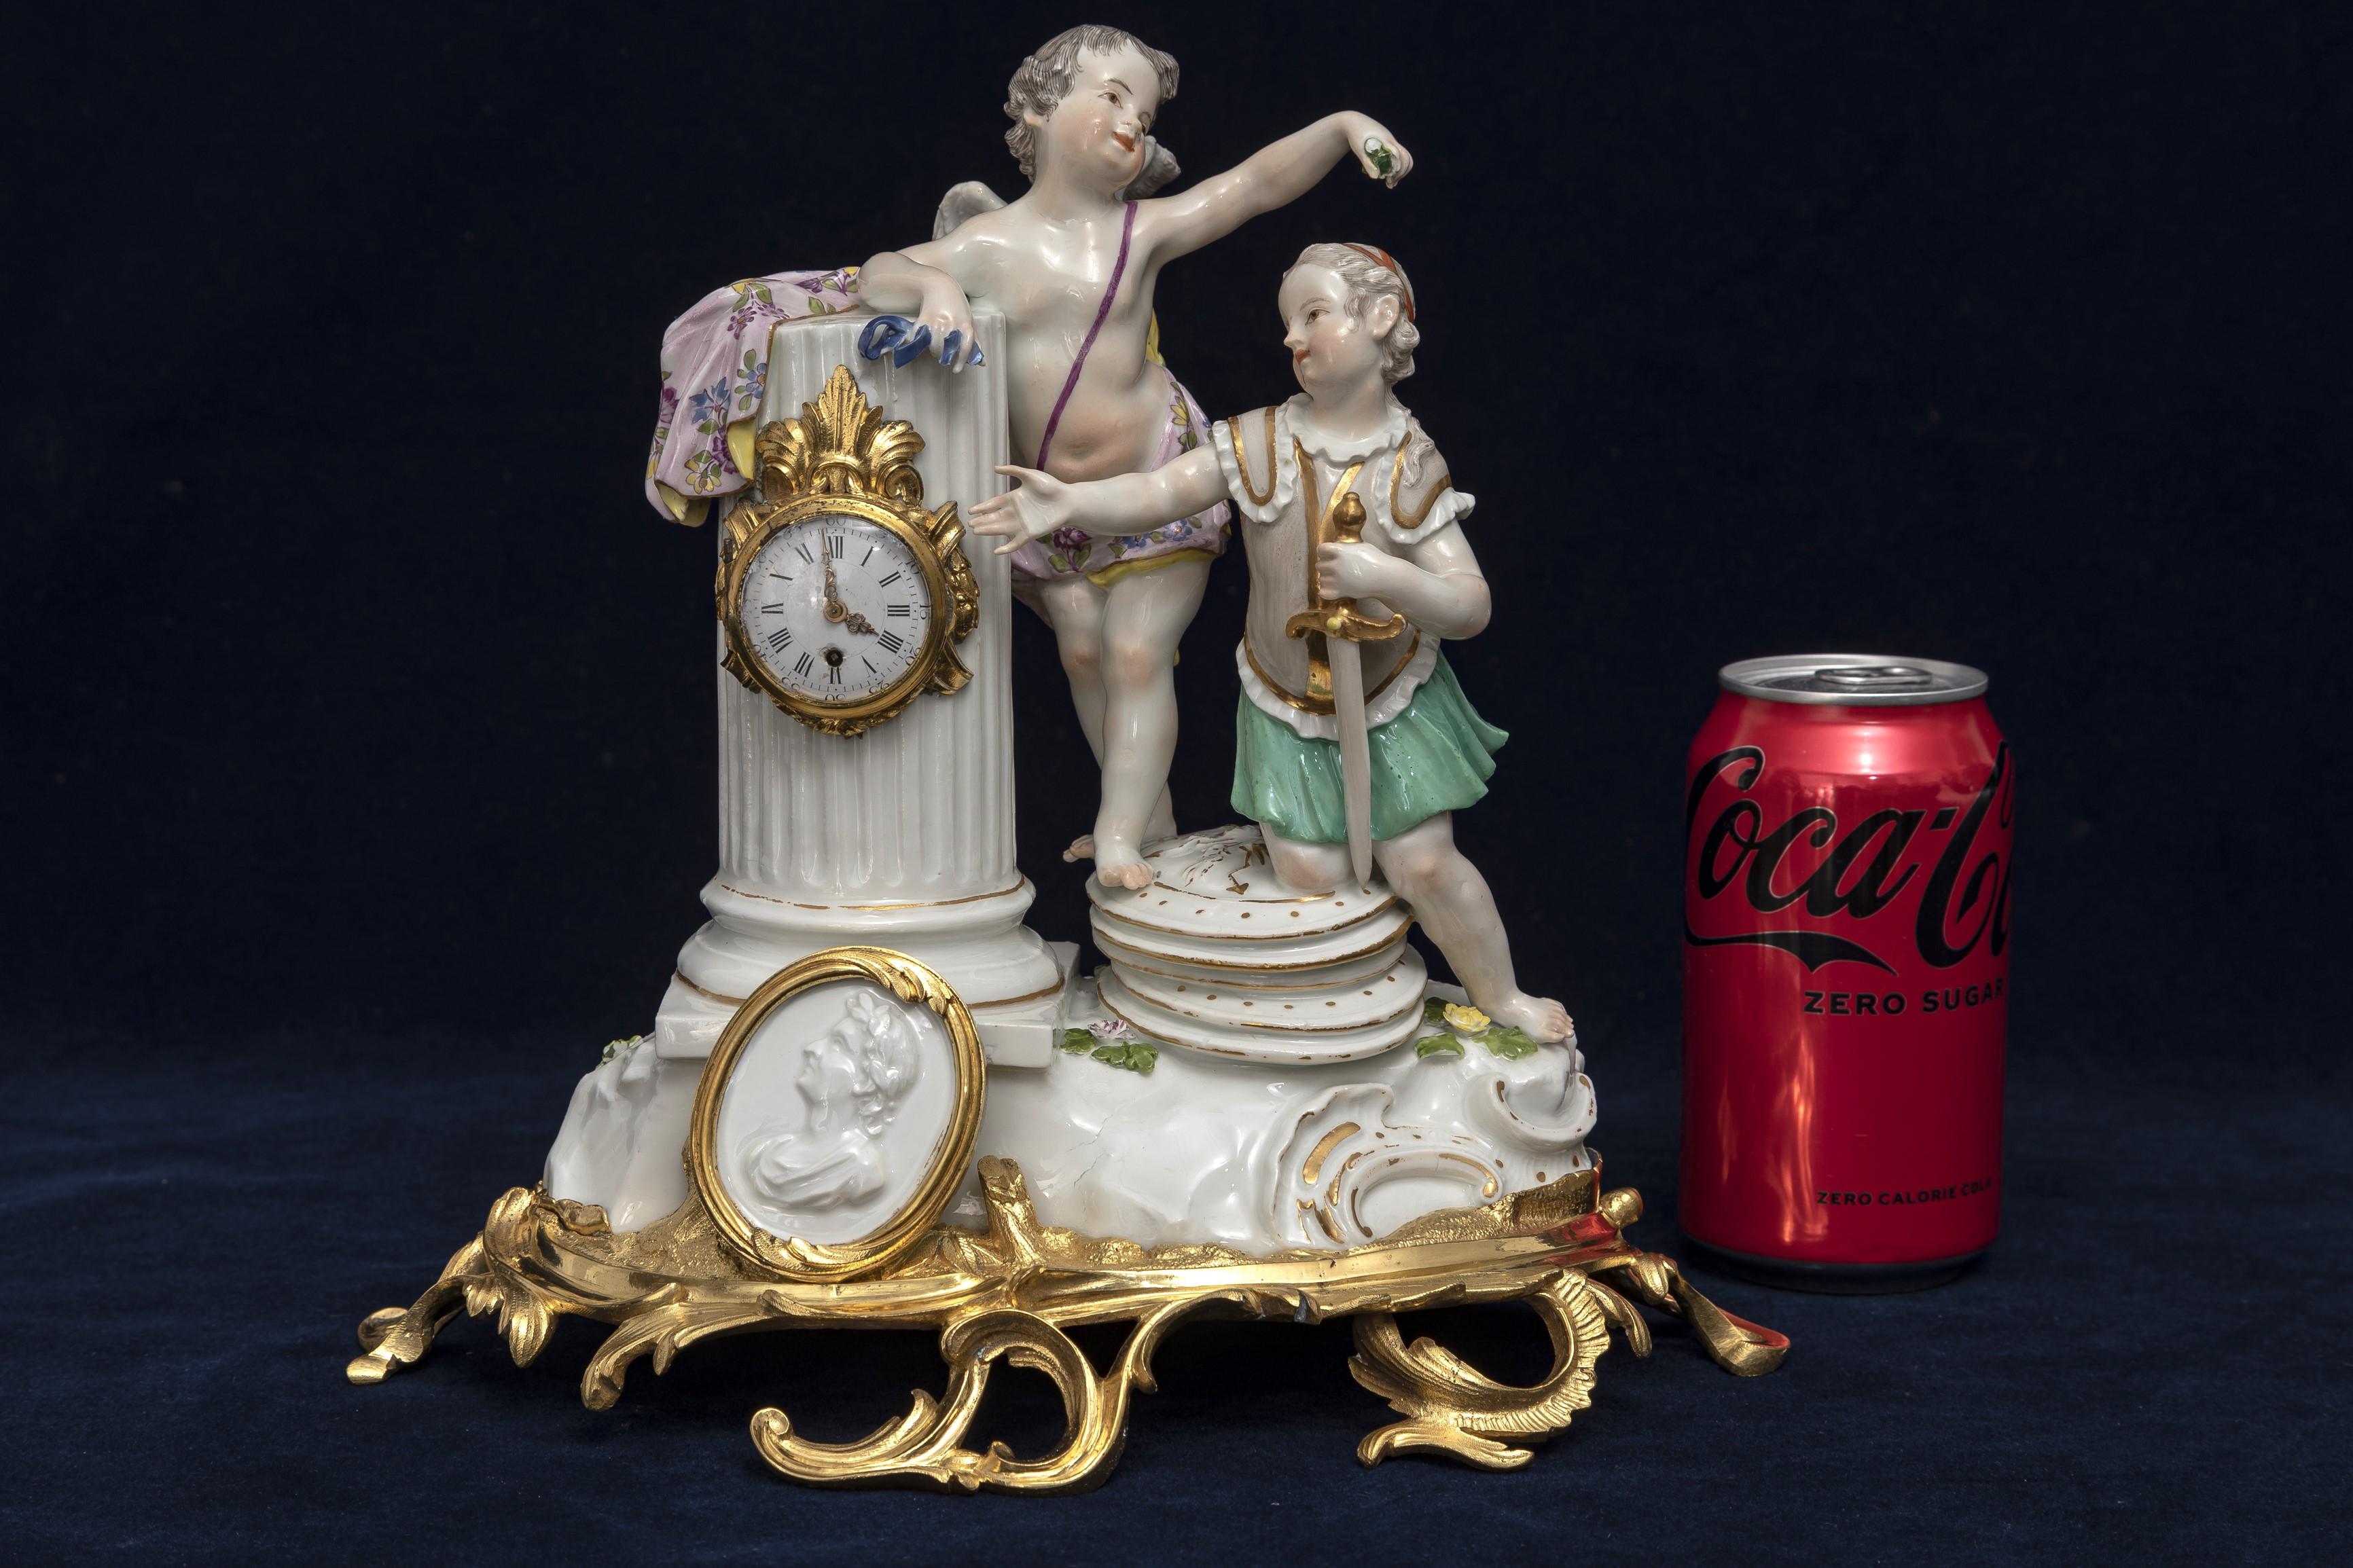 Unglaublich und ziemlich wichtig 18. Jahrhundert Ormolu montiert Meissen Porzellan Putti Uhr Gruppierung.  Die Komposition wird durch zwei Putten bereichert, die auf einem naturalistischen Porzellanhügel stehen. Ein Putti in militärischer Kleidung